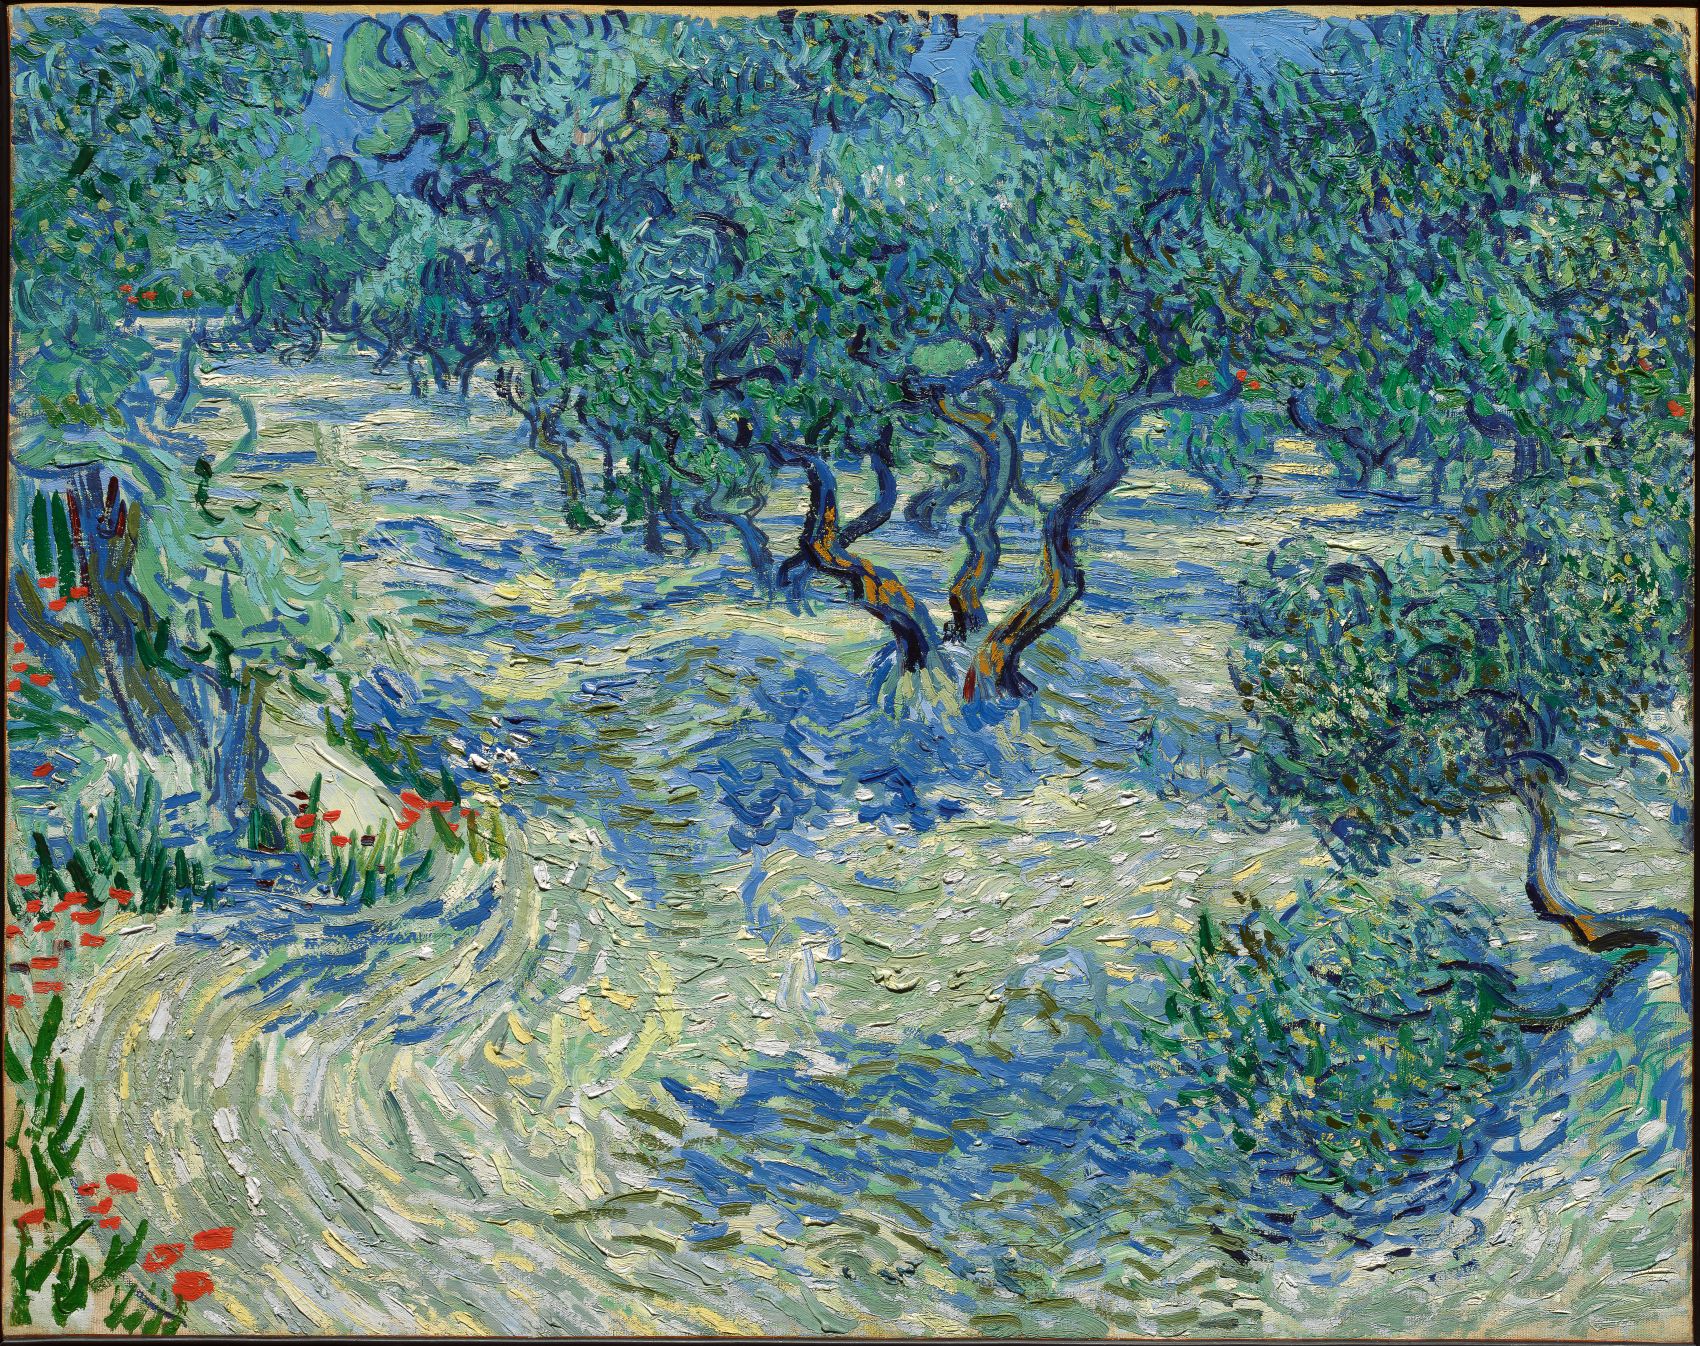 Les oliviers by Vincent van Gogh - 1889 - 73,2 × 92,2 cm 